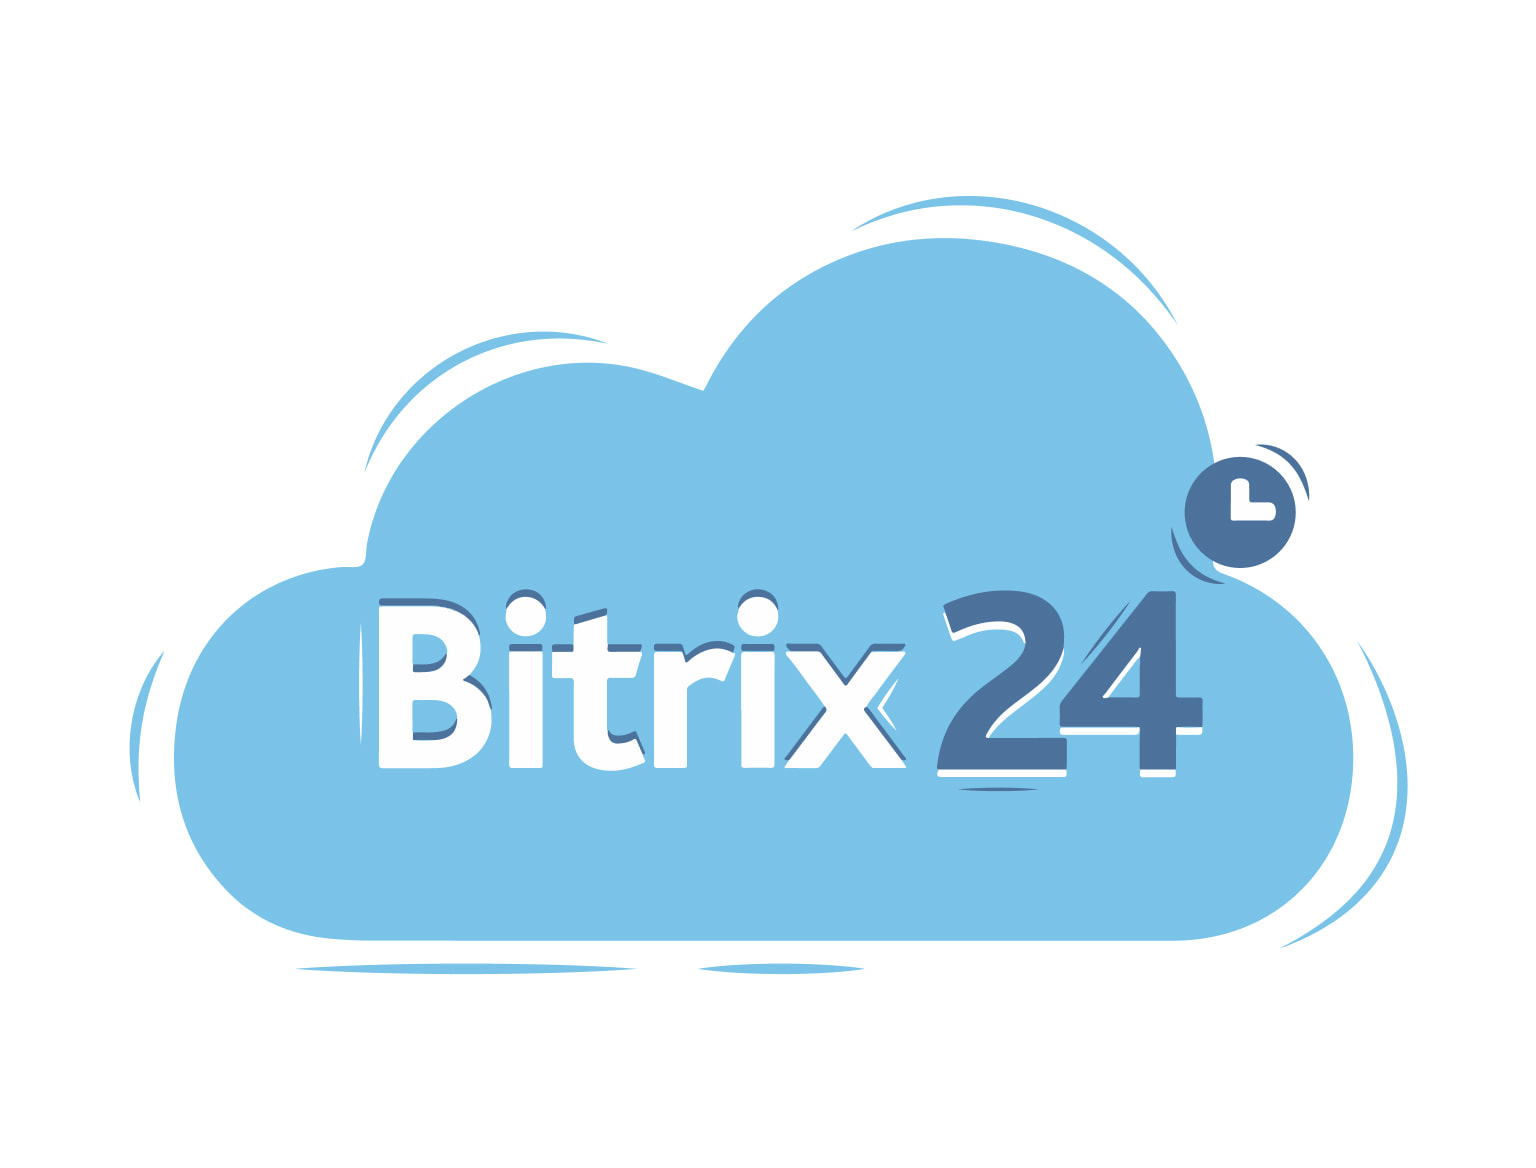 Интеграция Битрикс24 не представляет больших сложностей при правильном выборе метода